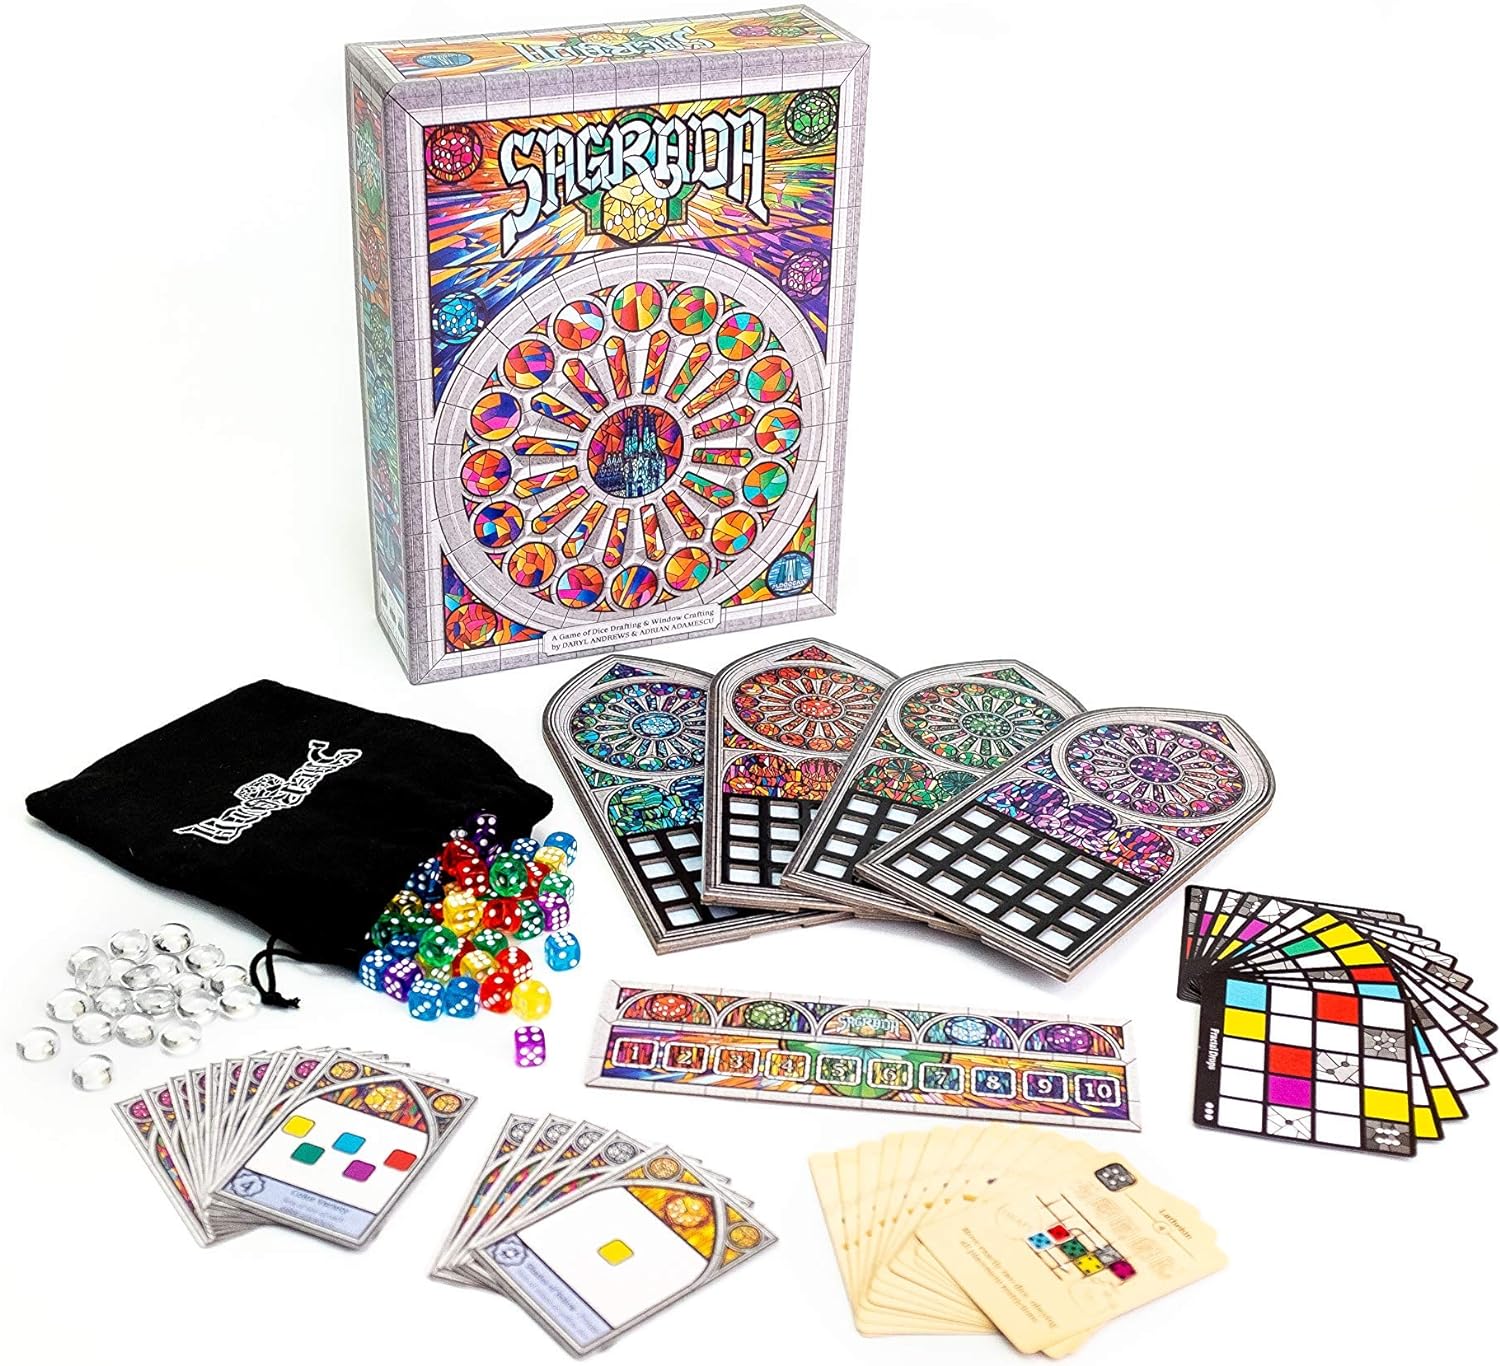 Scrabble Deluxe Plateau Pivotant - Boutique de Jeux Variantes